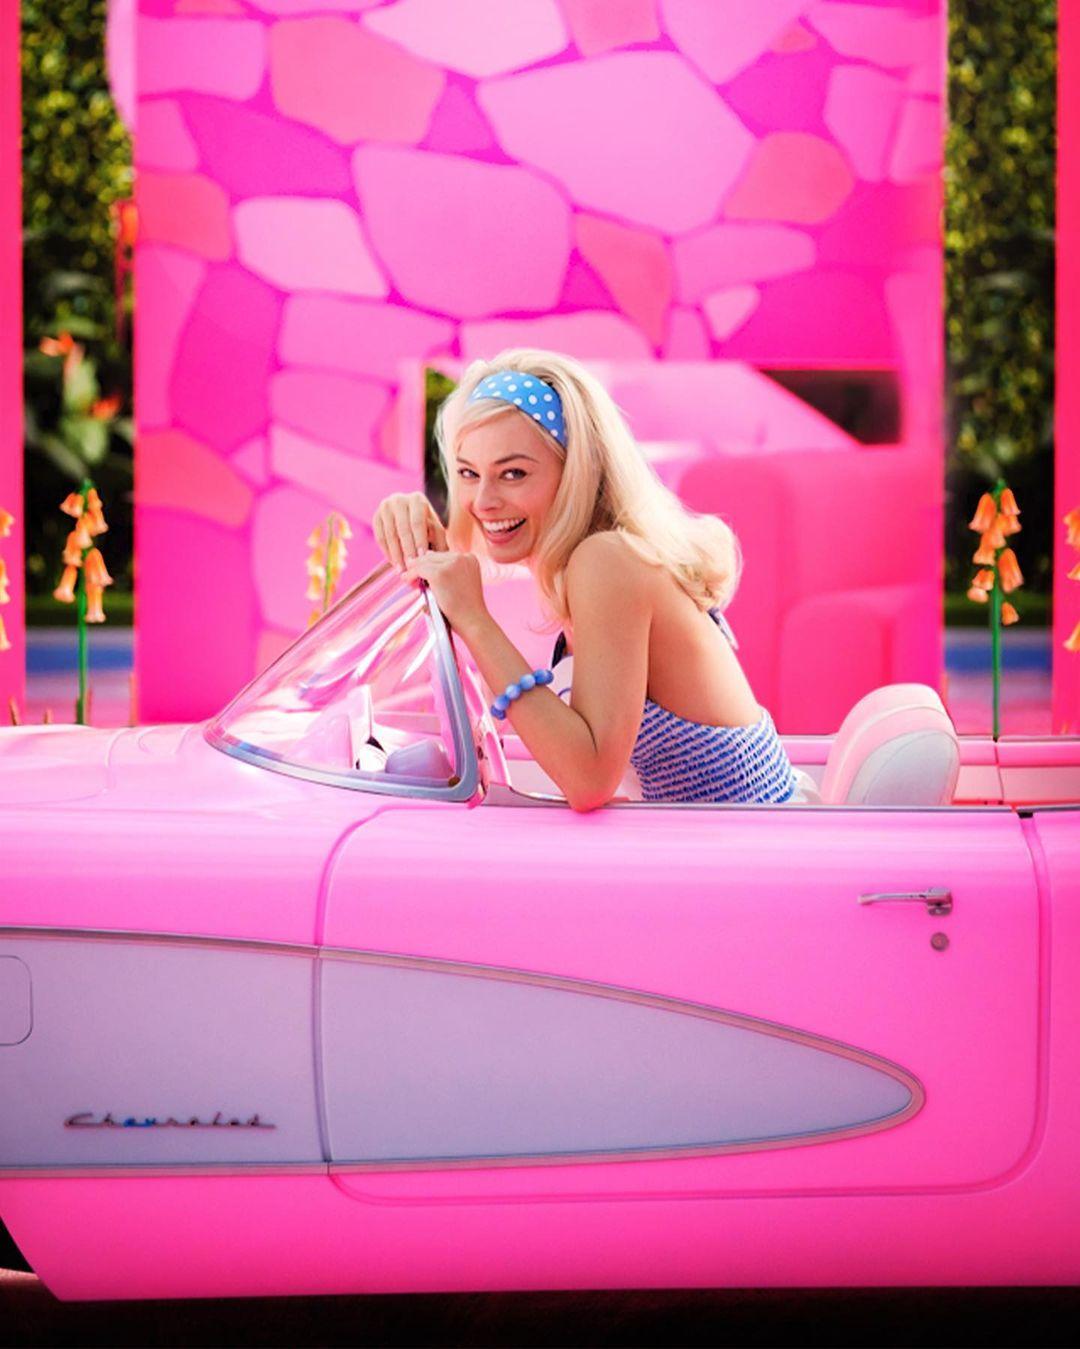 Margot Robbie As Barbie in "Barbie" Movie